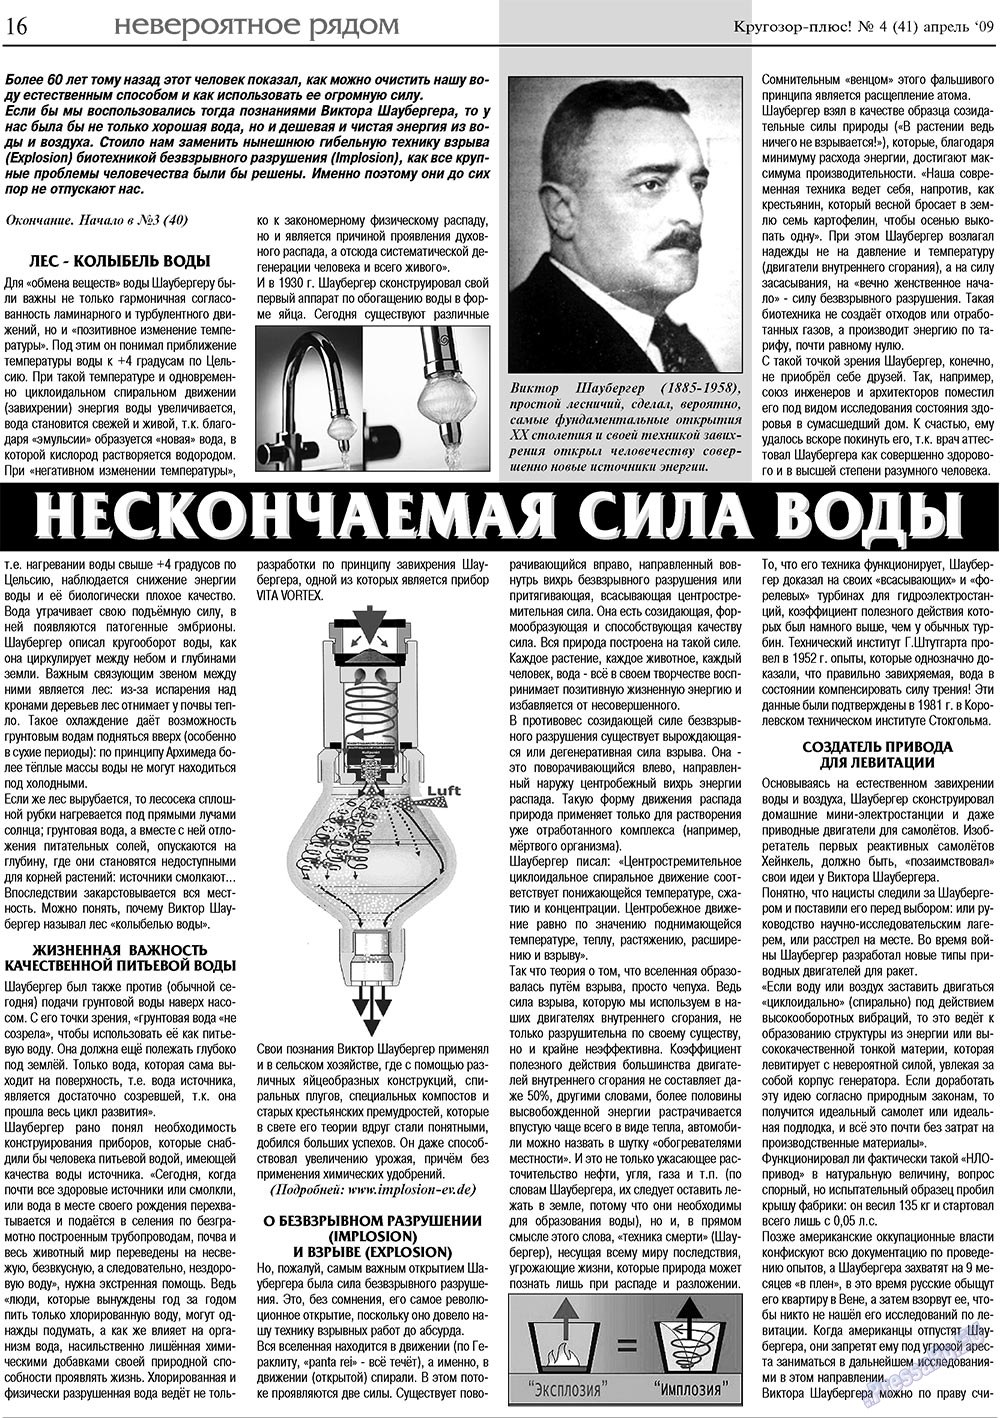 Кругозор плюс!, газета. 2009 №4 стр.16